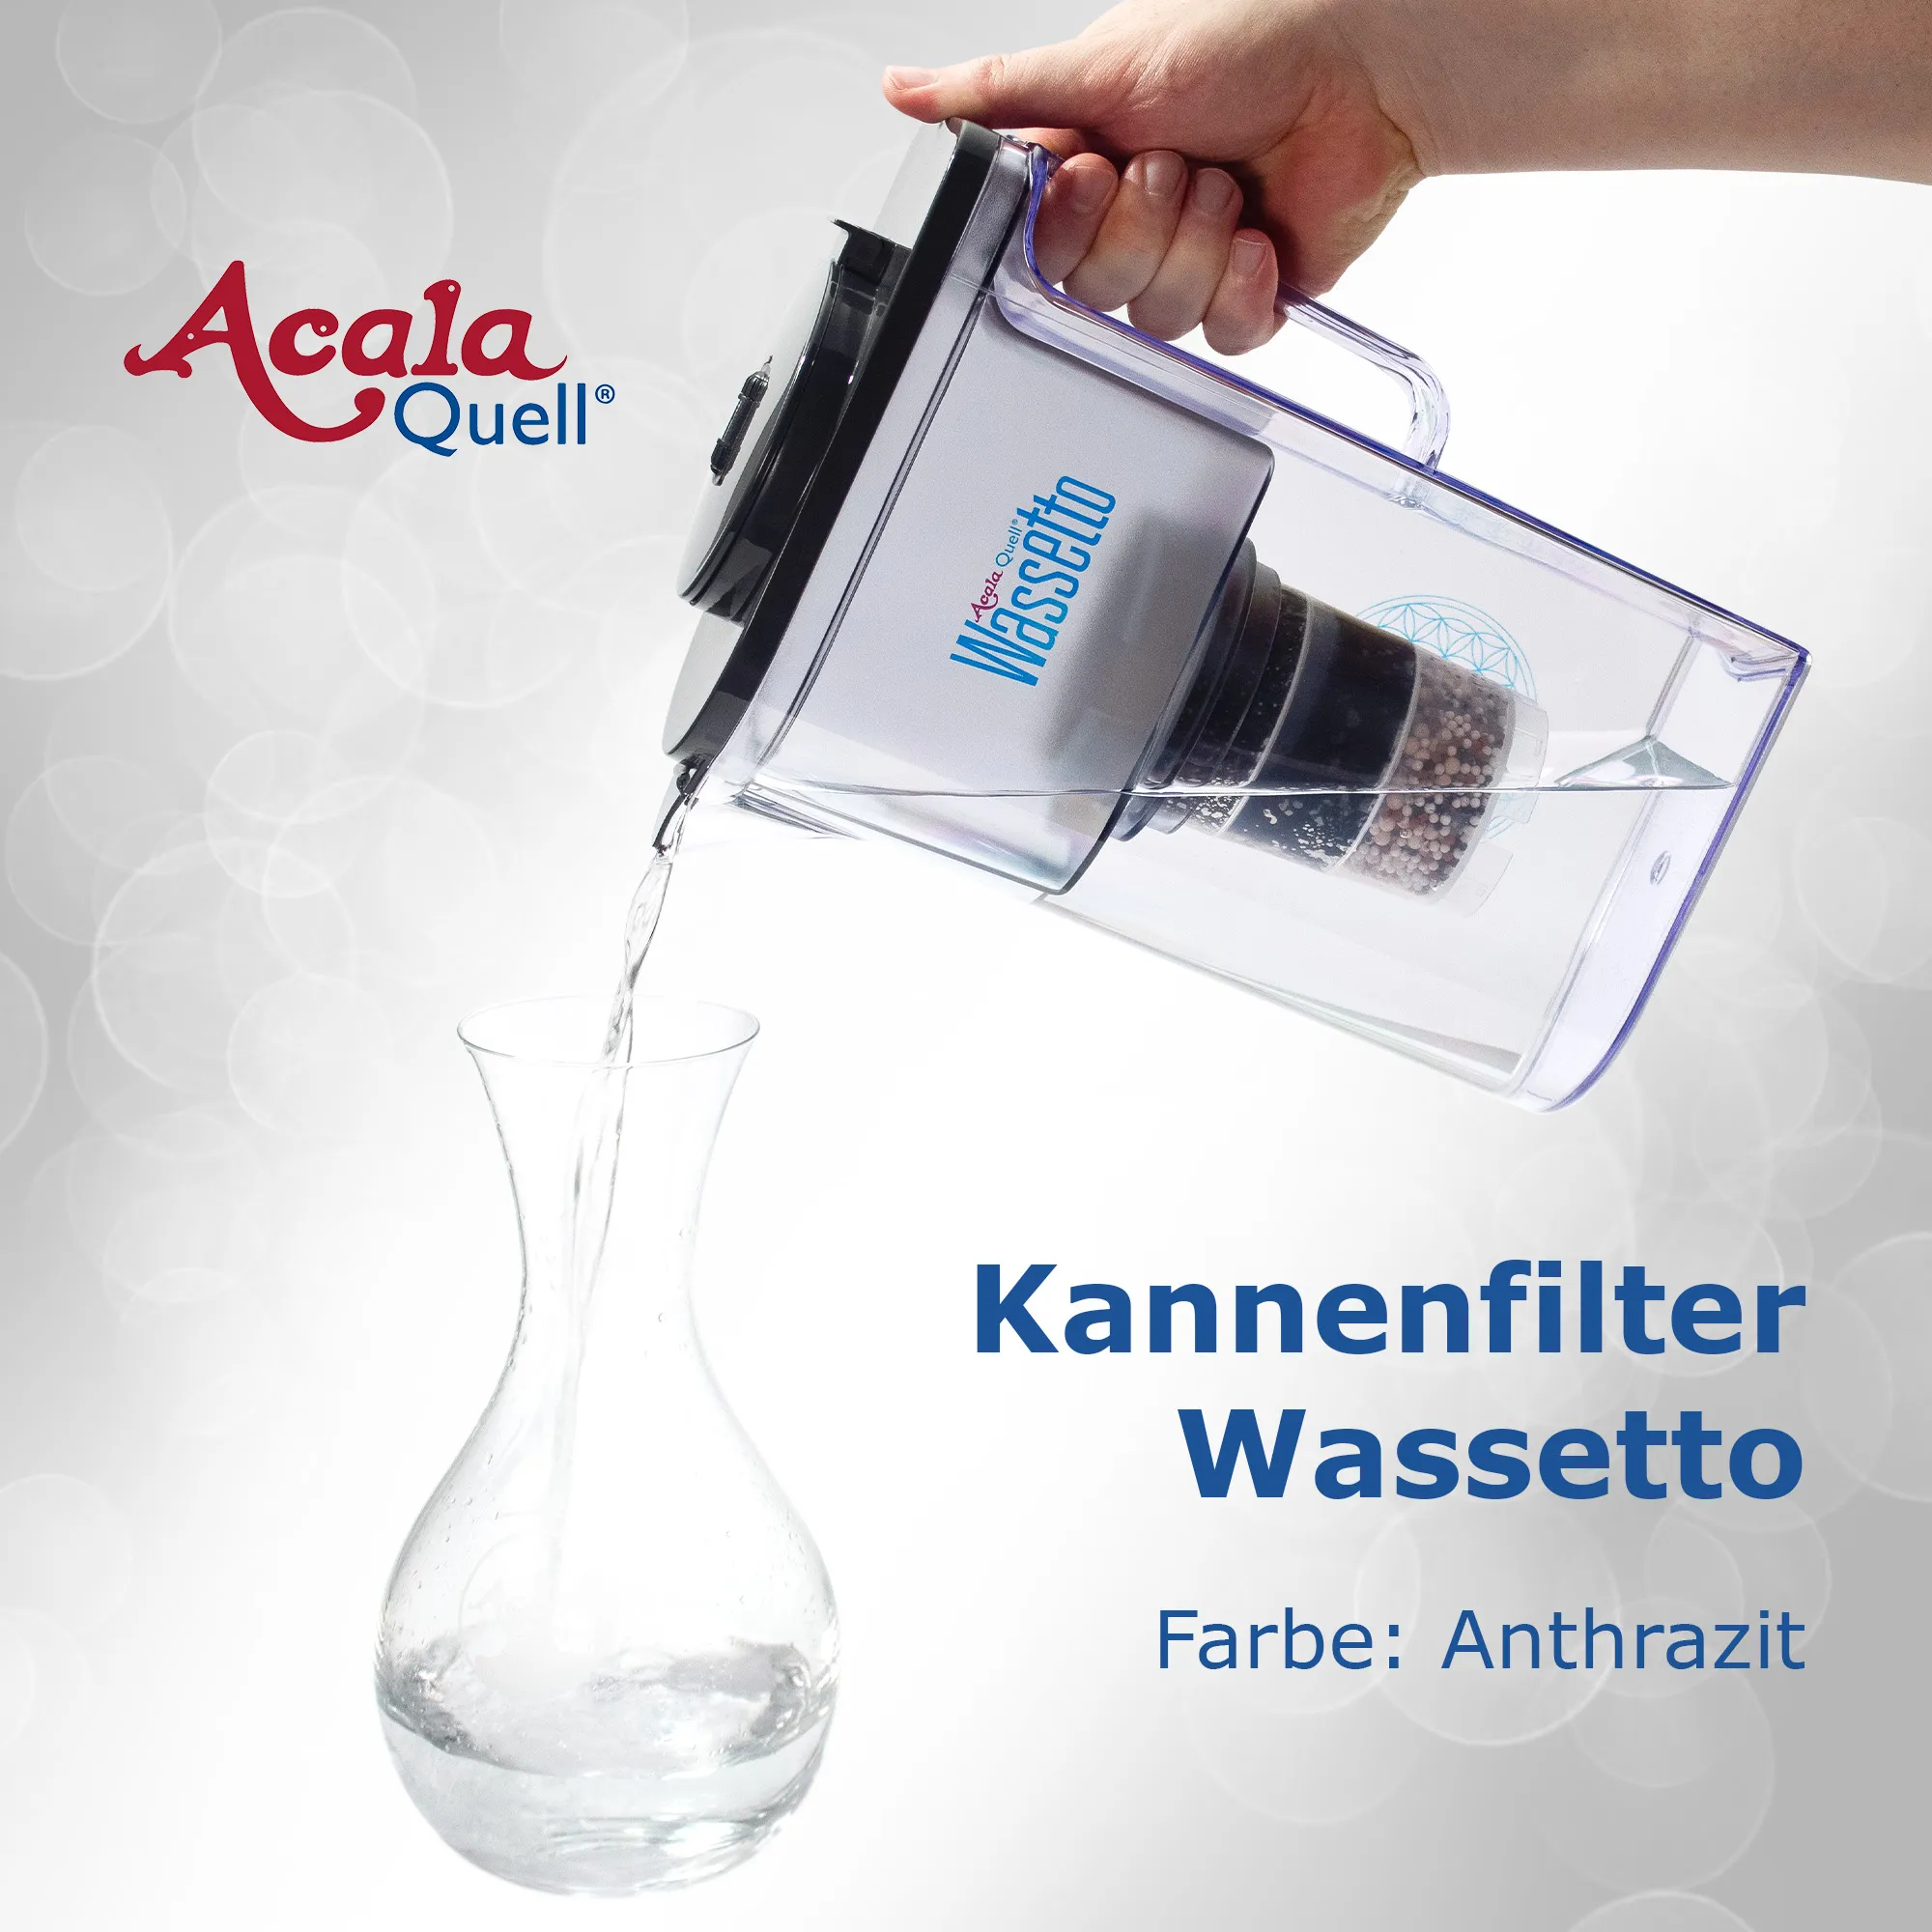 Frisch gefiltertes Wasser wird aus dem Kannenfilter Wassetto in eine Glaskaraffe gegossen